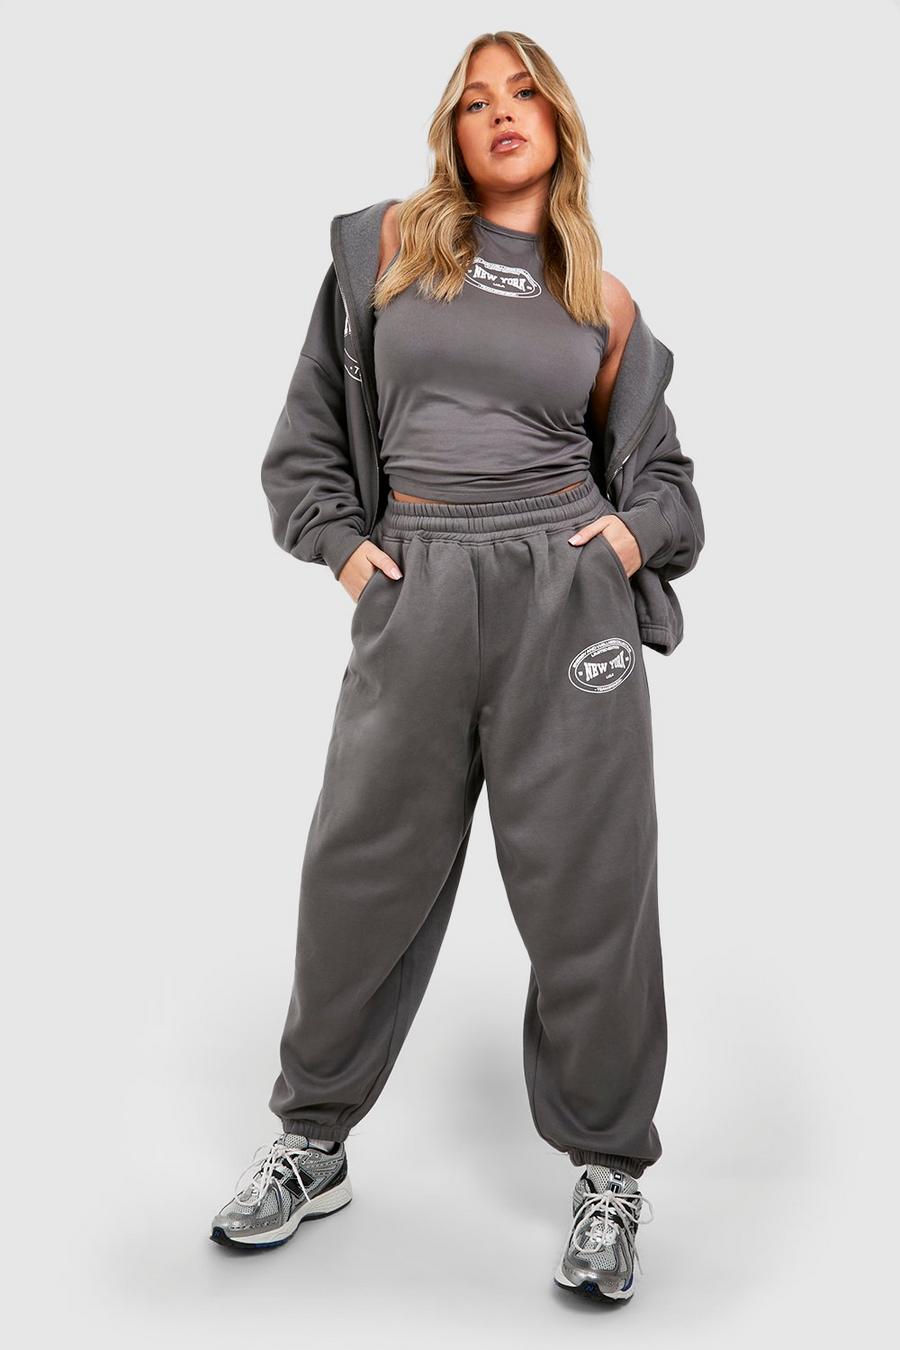 Pantalón deportivo Plus oversize con estampado de New York, Charcoal grigio